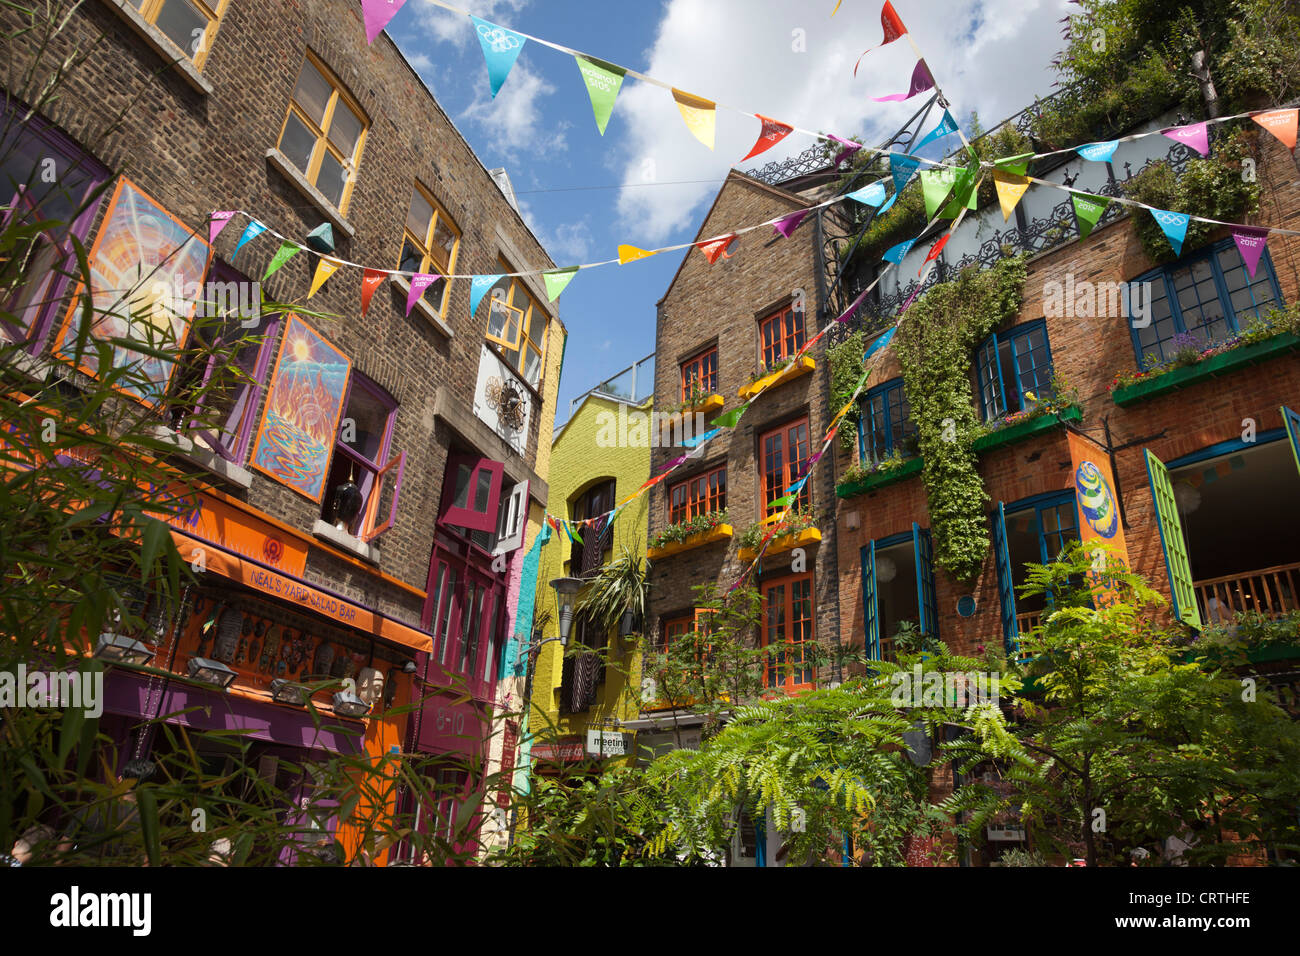 Neal's Yard, Small Alley o quadrata in Covent Garden di Londra, Inghilterra, Regno Unito Foto Stock